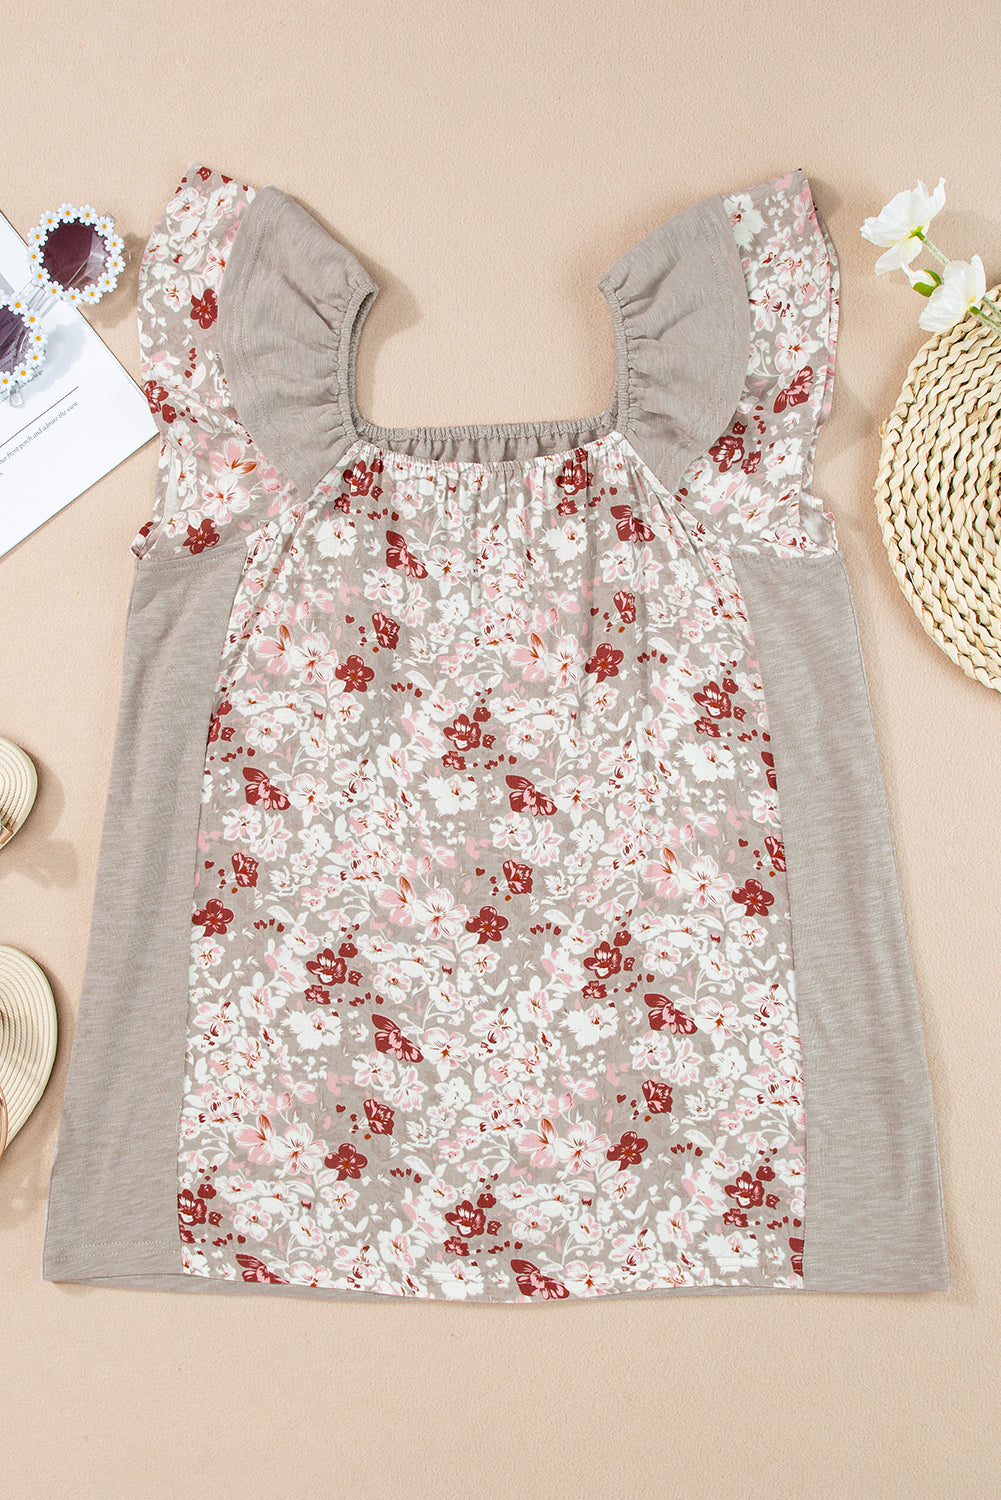 Graue, florale Patchwork-Bluse mit eckigem Ausschnitt und Rüschenärmeln